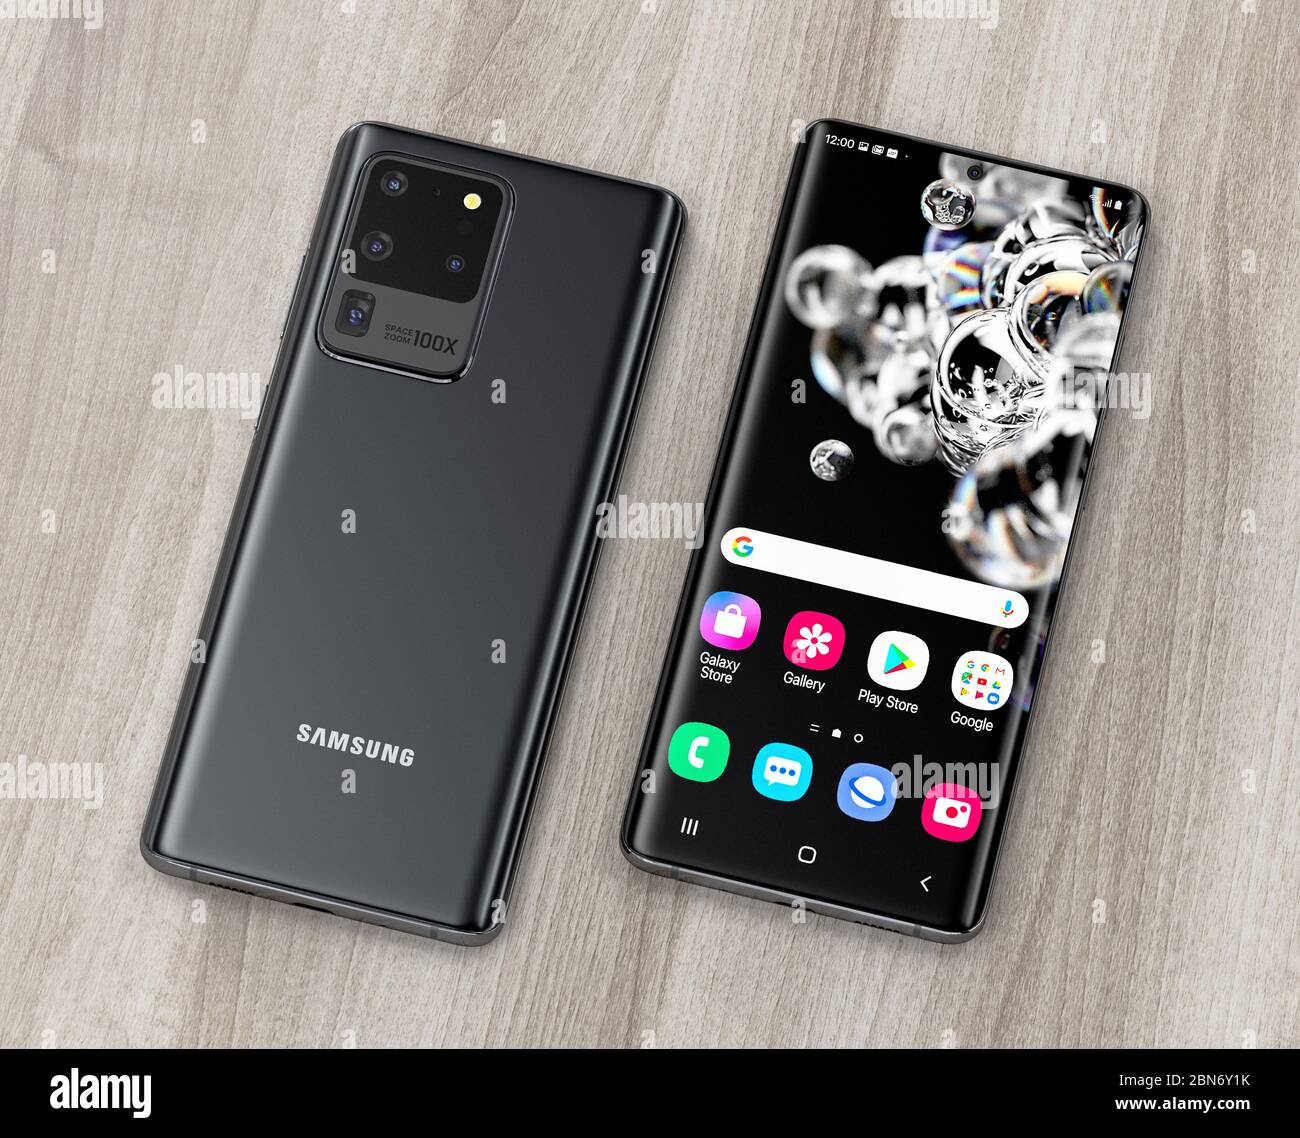 VÉRONE, ITALIE - 01 MAI, 2020: Le nouveau smartphone Samsung Galaxy S20 5G  ultra est exposé à des fins éditoriales. Rendu 3d haute résolution Photo  Stock - Alamy